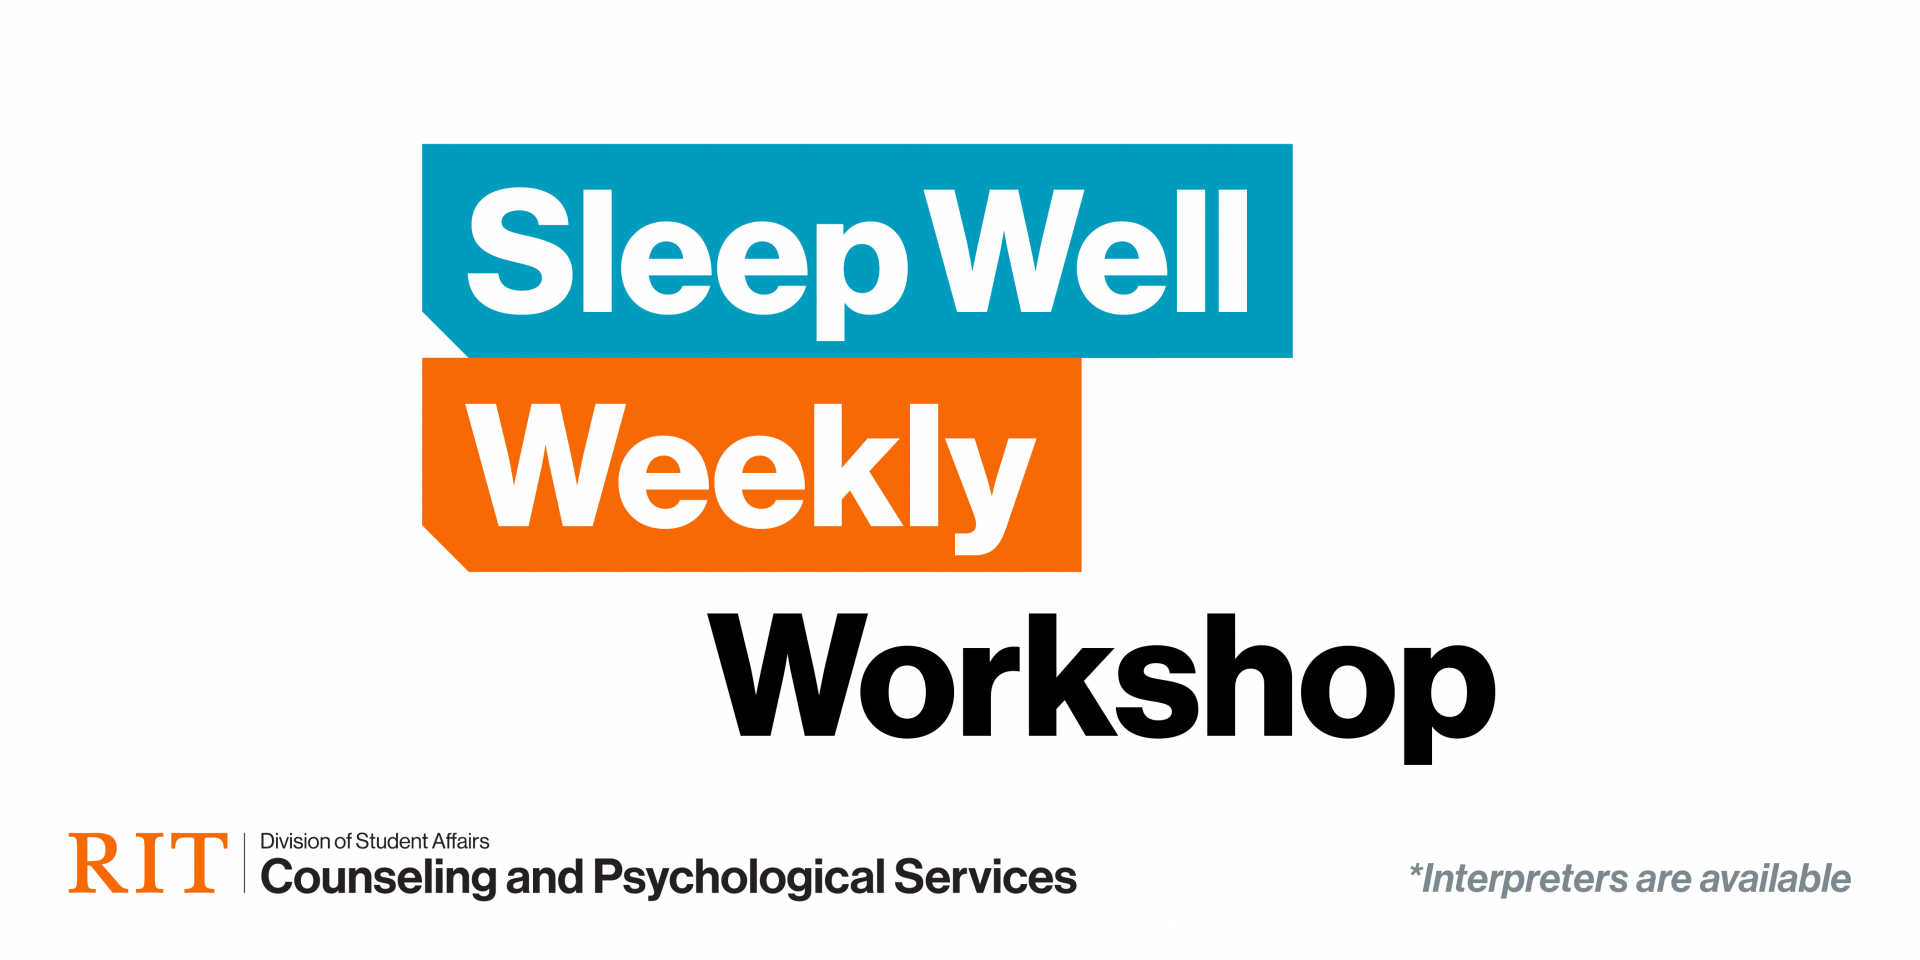 Sleep Well Weekly Workshop